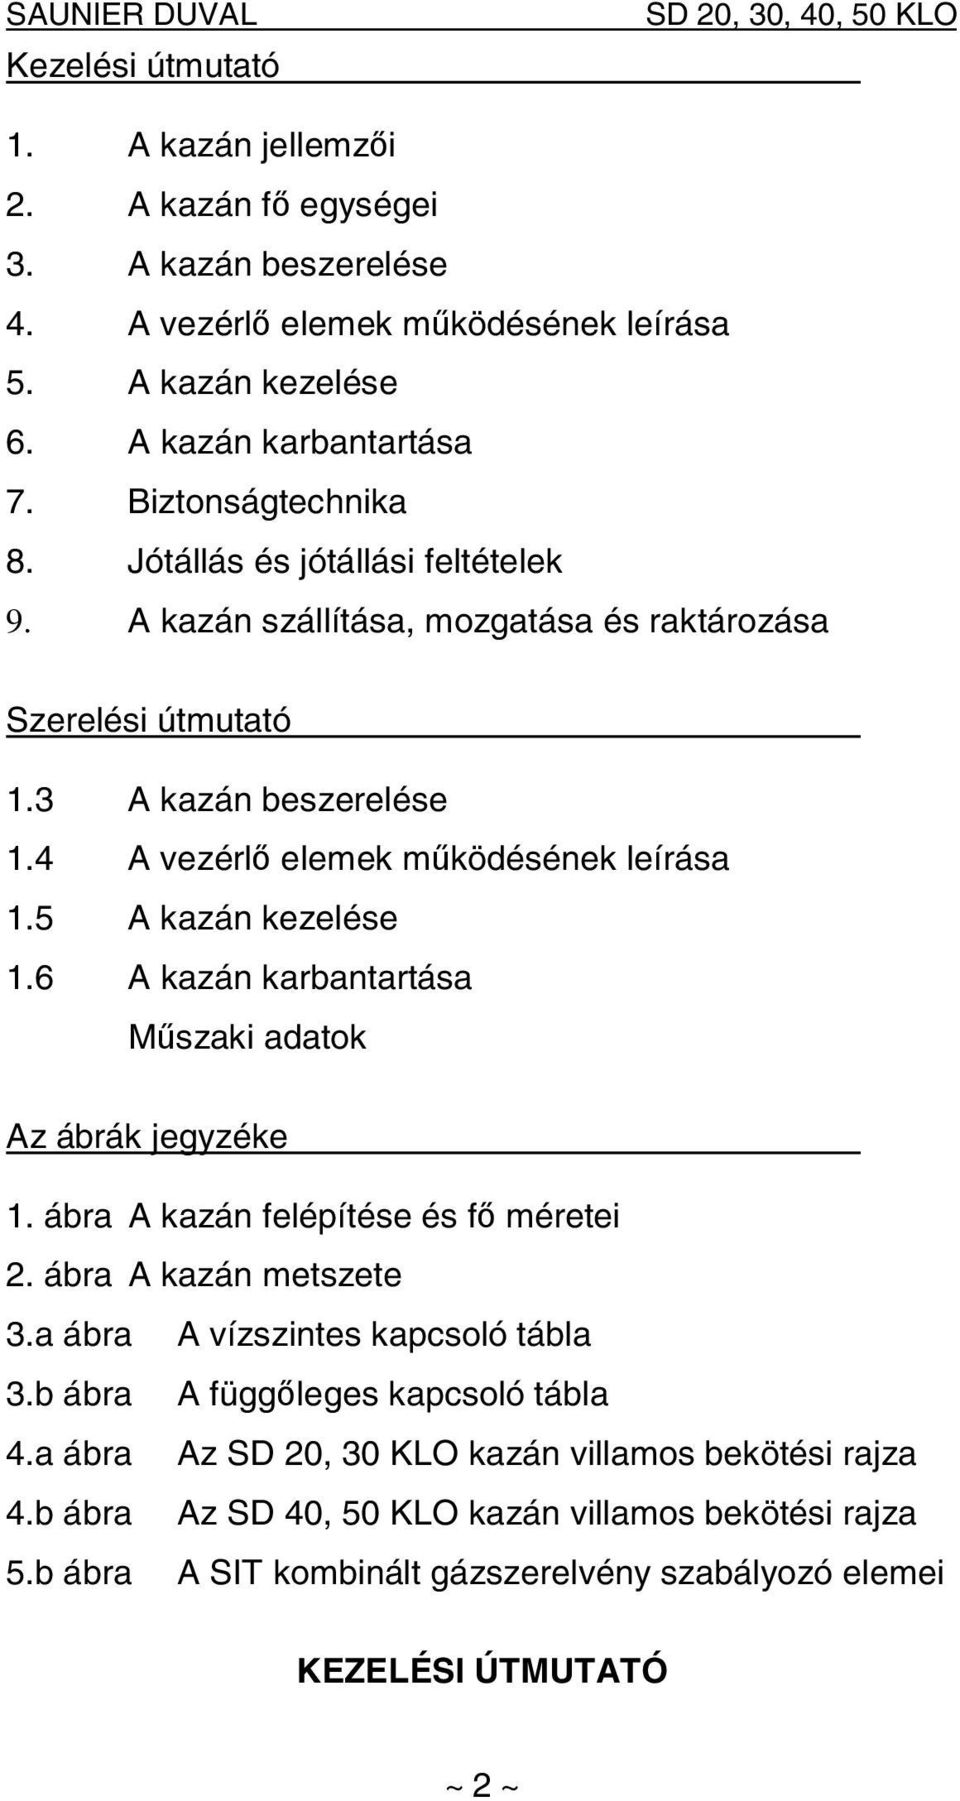 SD 20, 30, 40, 50 KLO - PDF Ingyenes letöltés